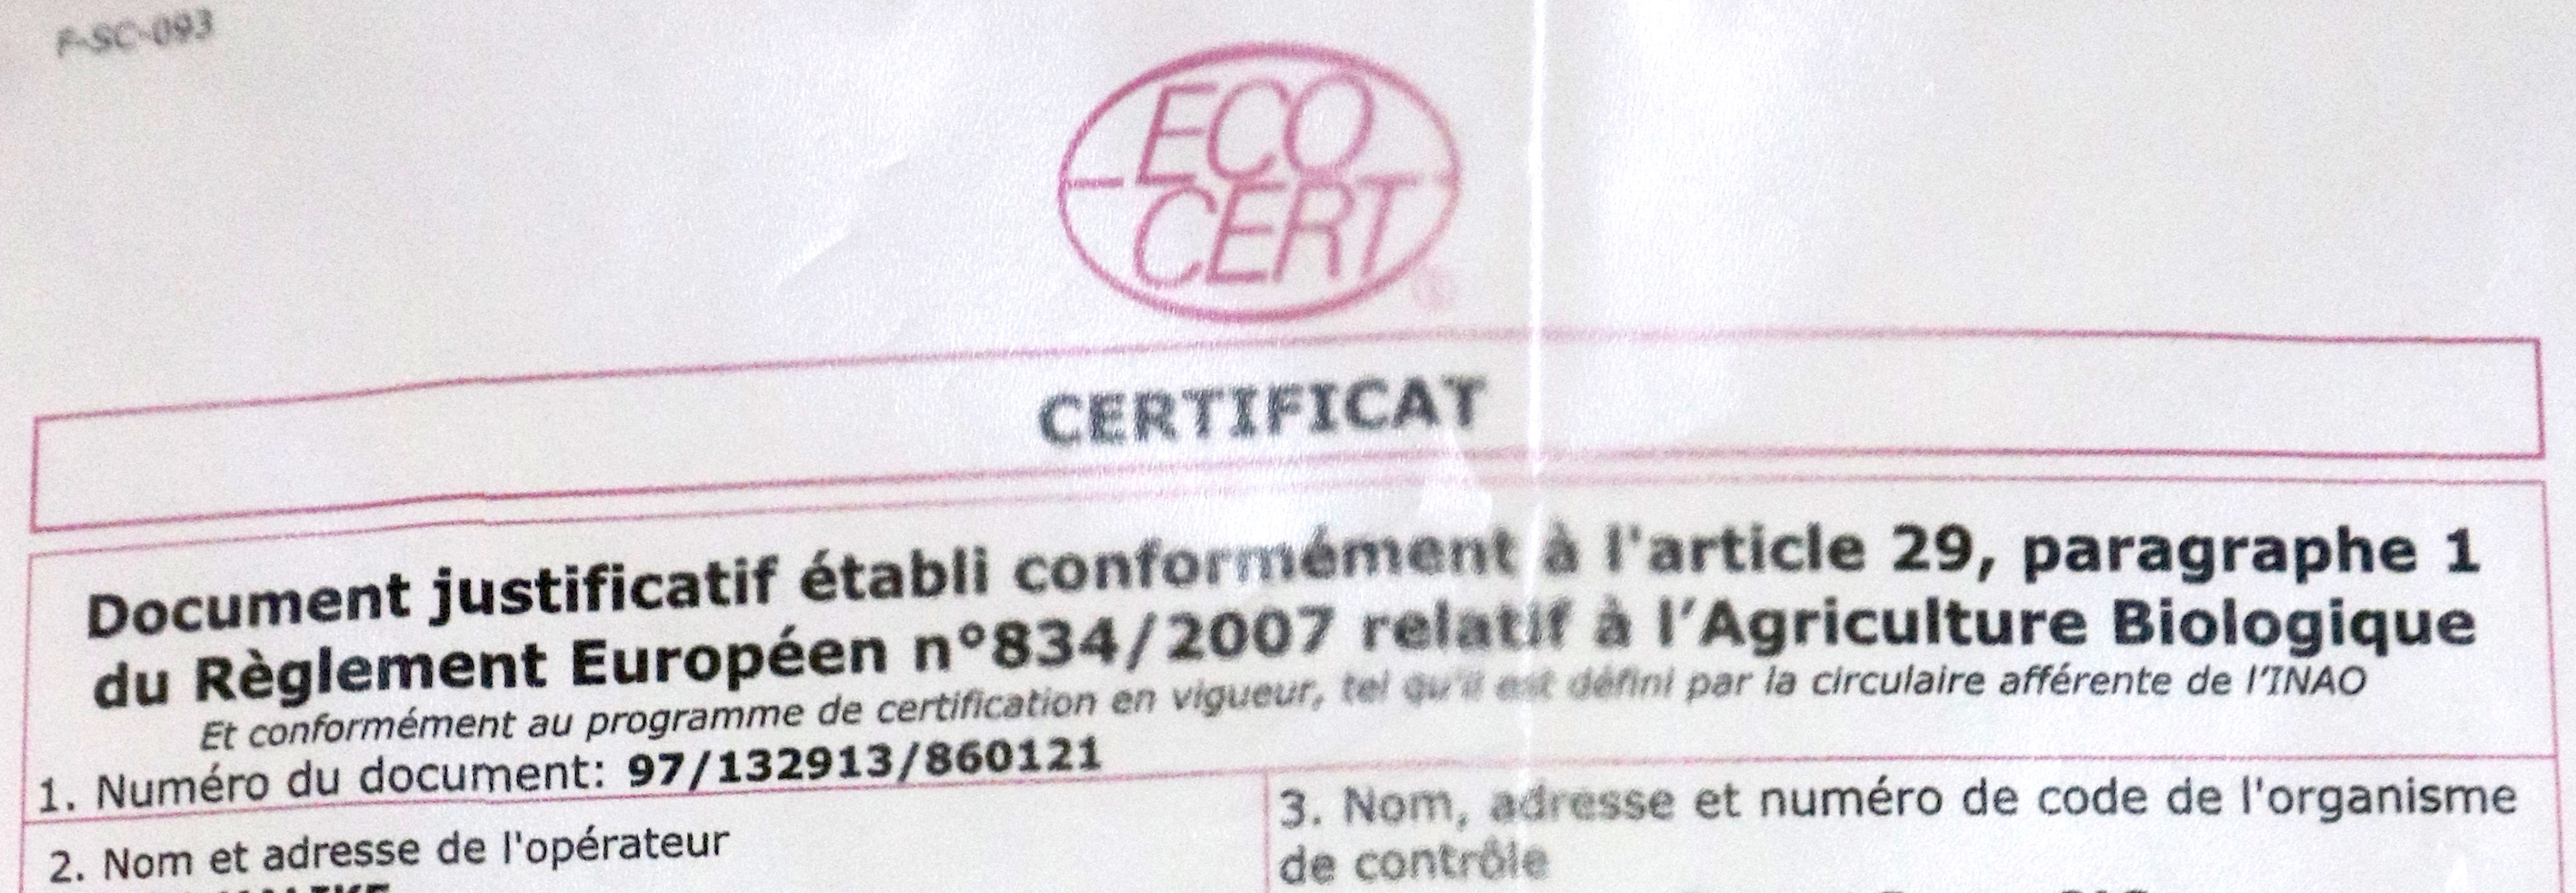 certificat ECOCERT